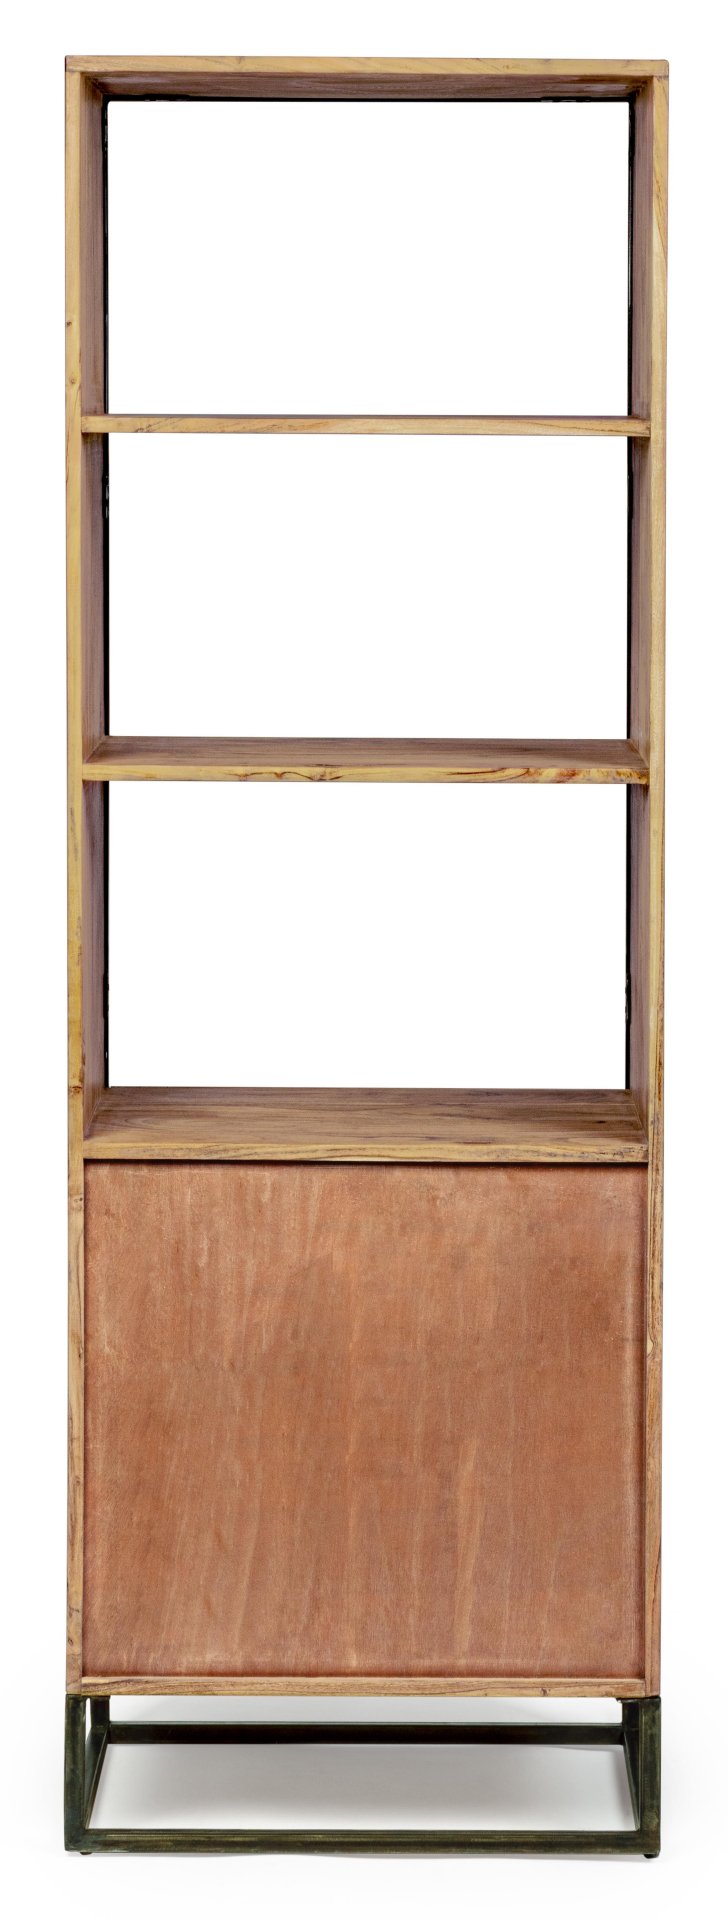 Das Bücherregal Egon überzeugt mit seinem klassischen Design. Gefertigt wurde es aus Akazienholz, welches einen natürlichen Farbton besitzt. Das Gestell ist aus Metall und hat eine schwarze Farbe. Das Bücherregal verfügt über eine Tür und drei Fächer. Die